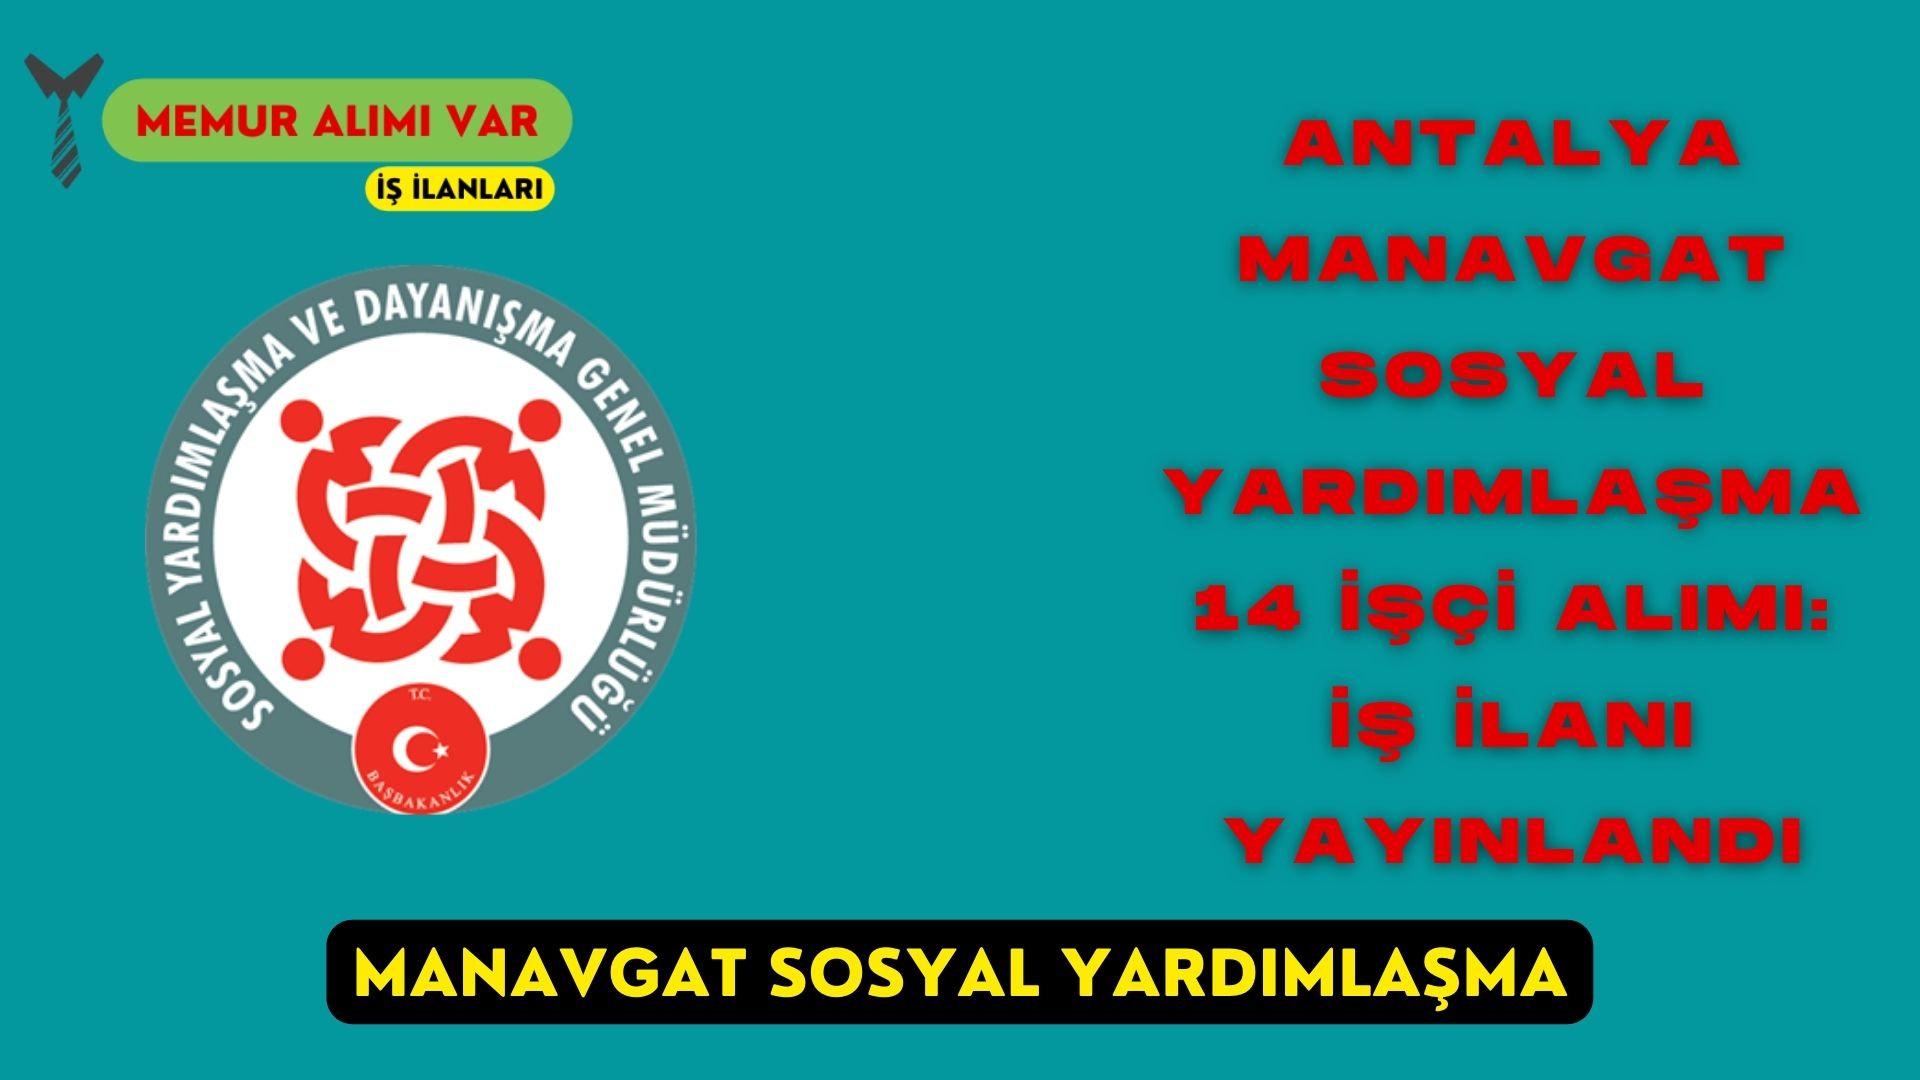 Antalya Manavgat Sosyal Yardımlaşma 14 İşçi Alımı: İş İlanı Yayınlandı